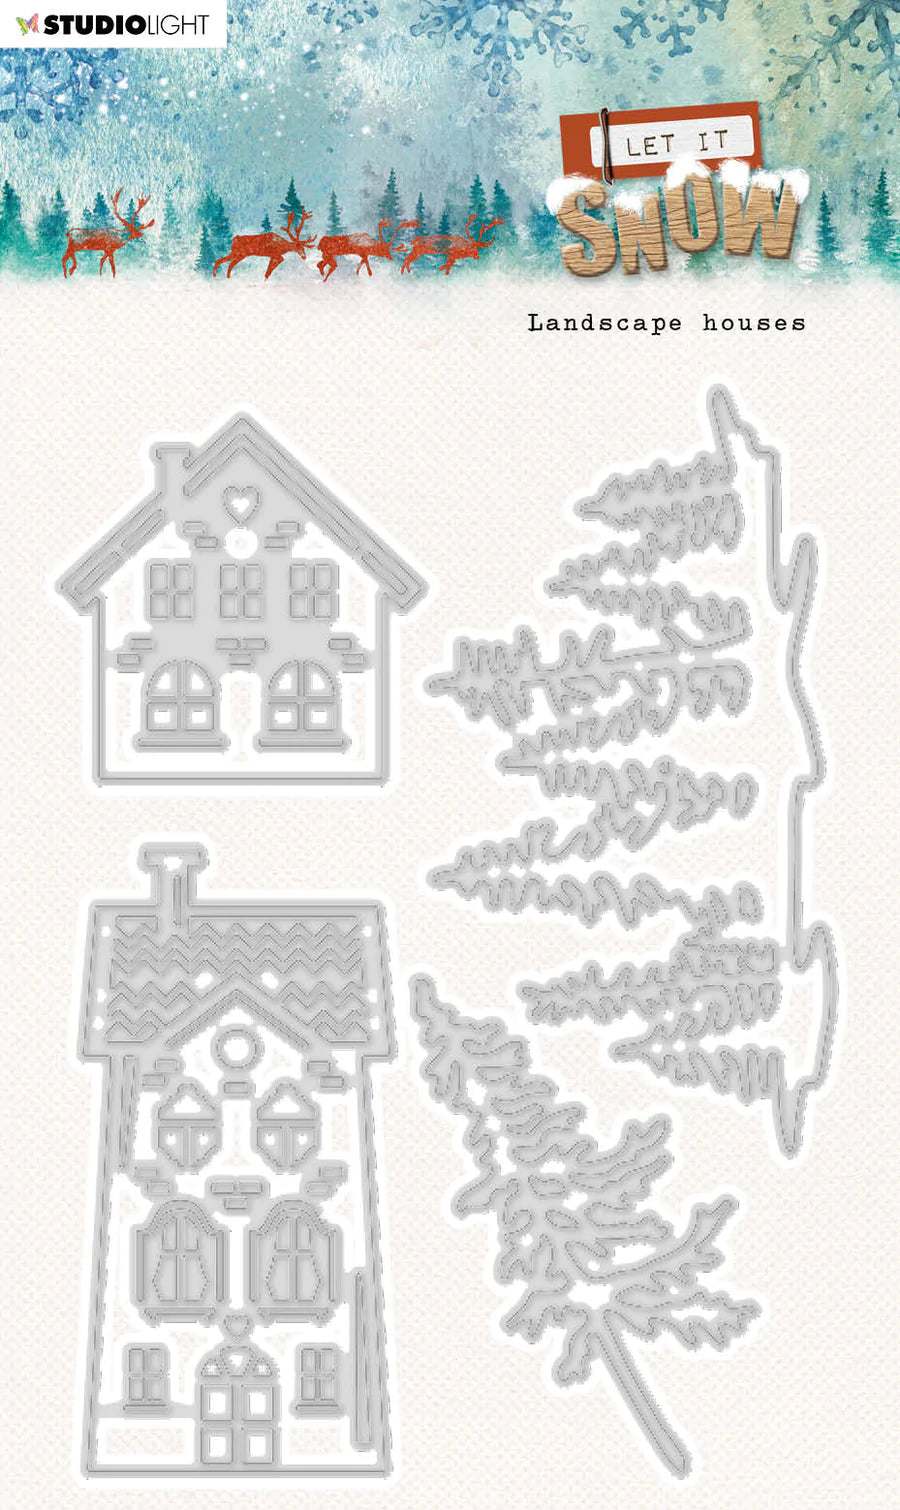 6x4 Cutting Dies - Landscape Houses - Let It Snow - Studio Light